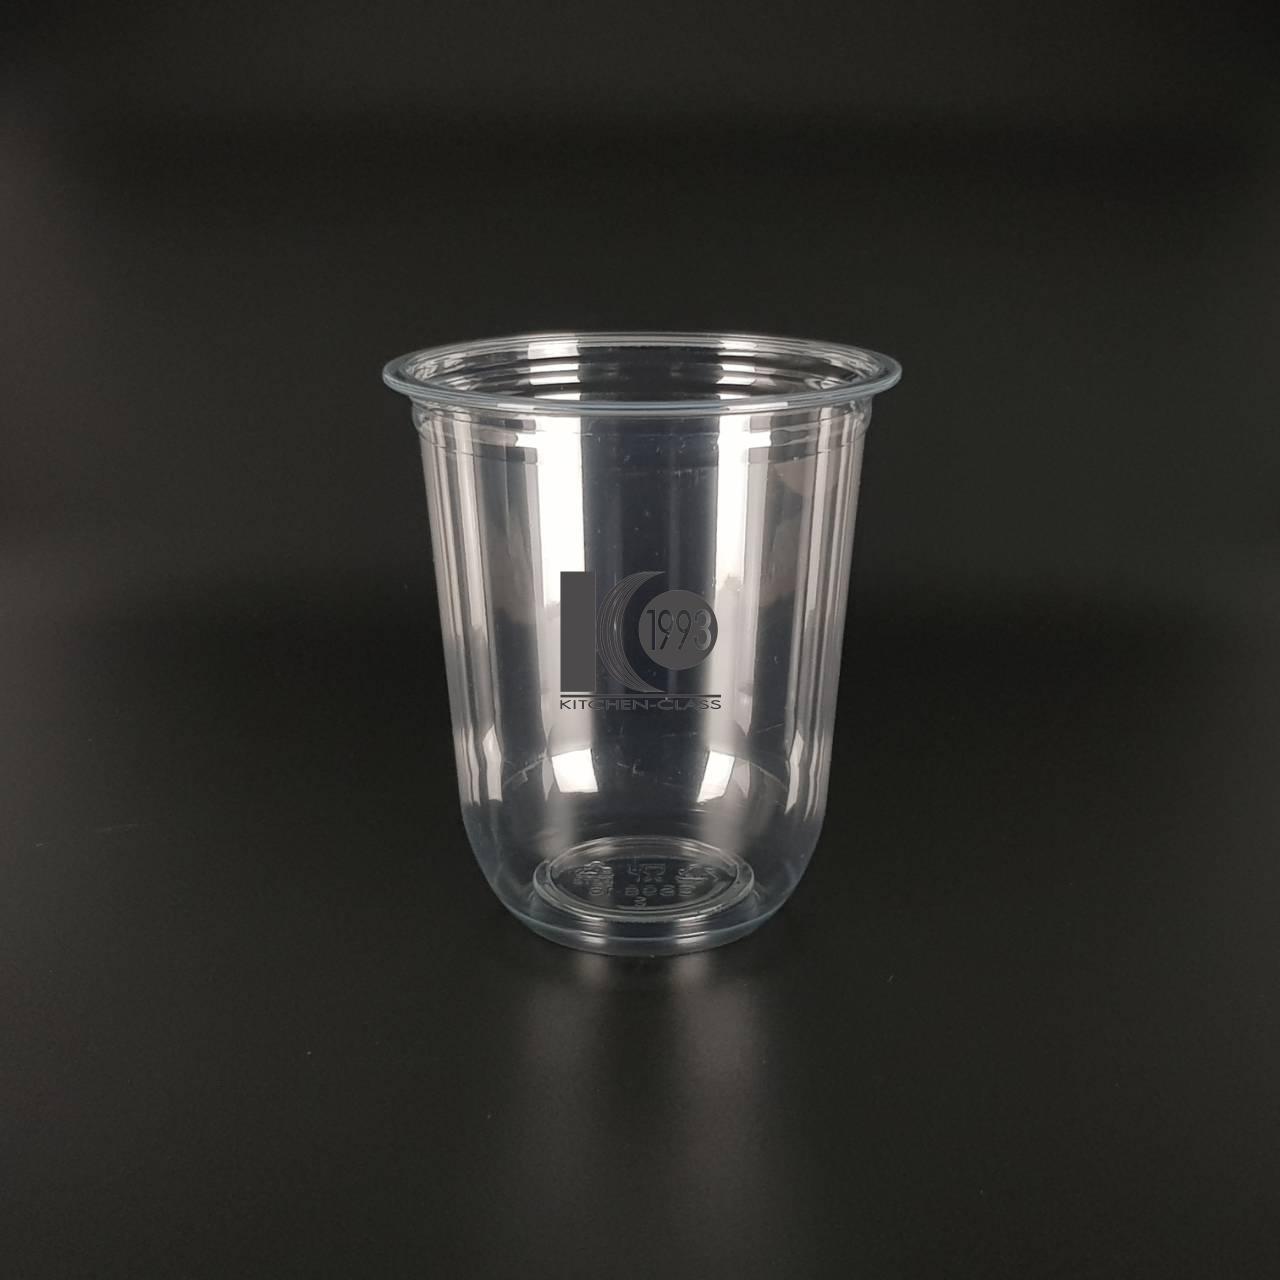 16 Oz 98 MM Plastic Cups